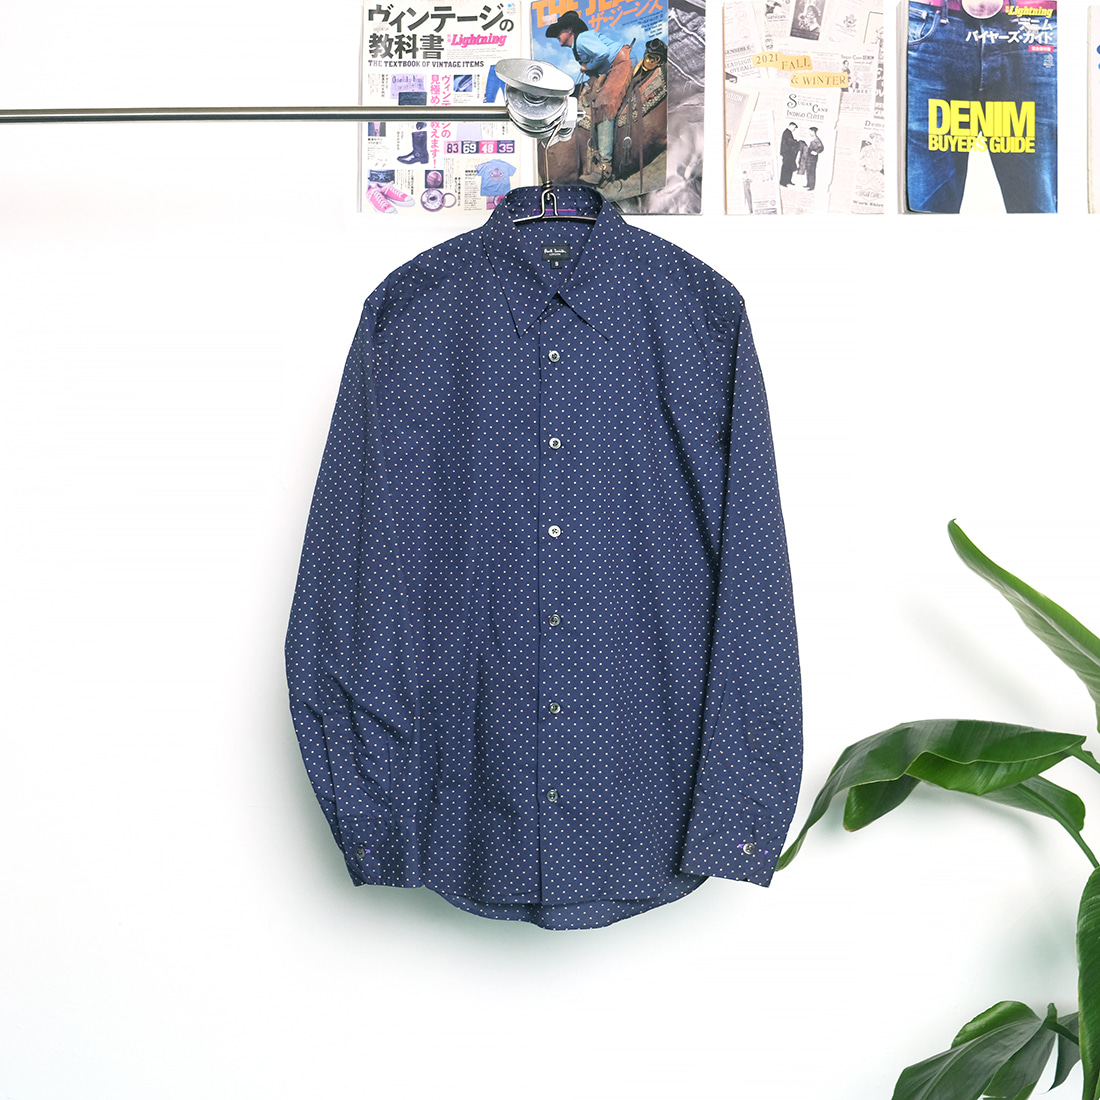 폴스미스 / Made in japan  Paul smith dot shirt